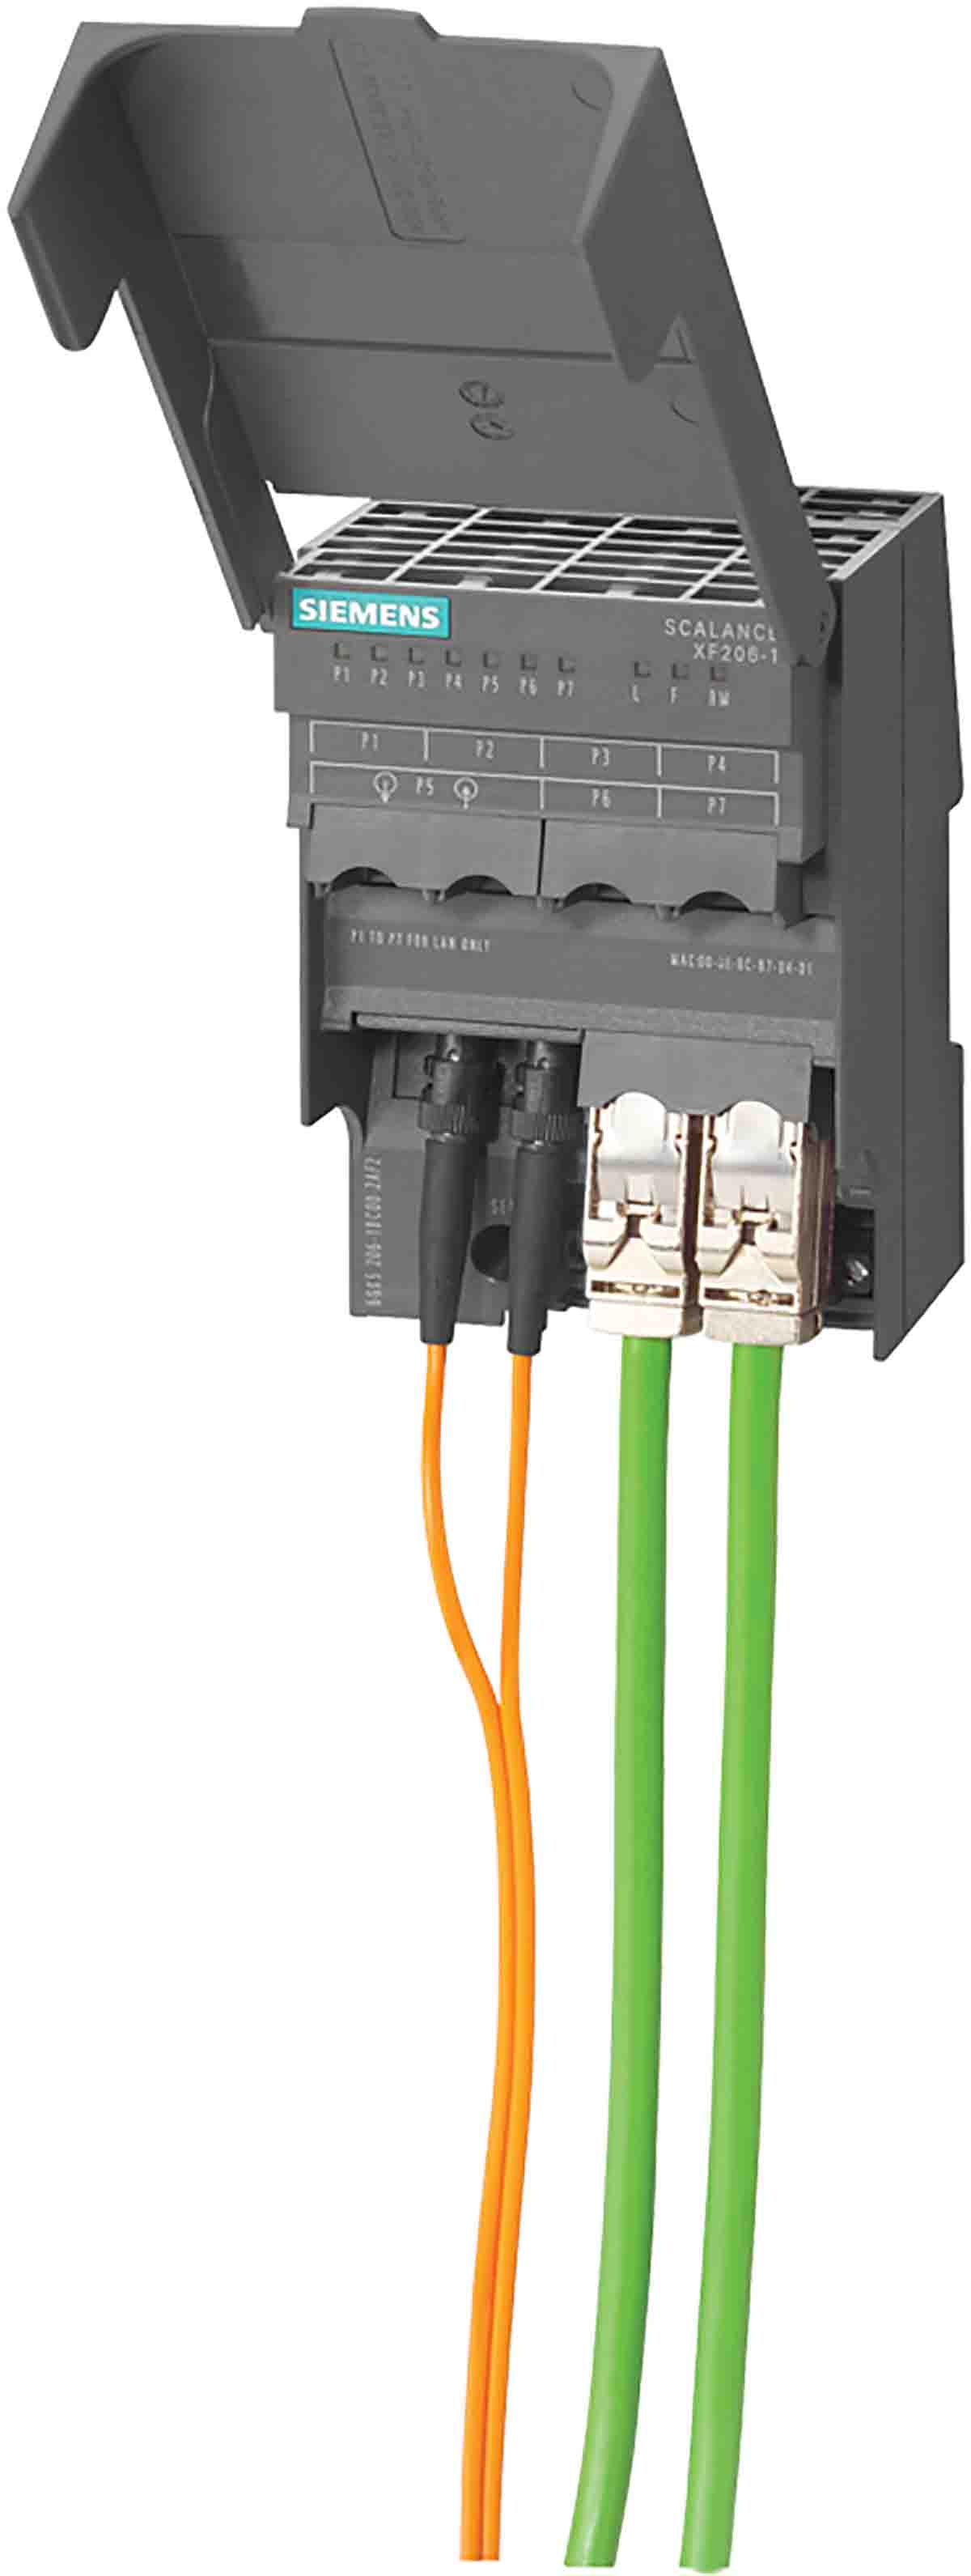 Siemens DIN Rail Mount Ethernet Switch, 6 RJ45 port, 24V dc, 10 Mbit/s, 100 Mbit/s Transmission Speed